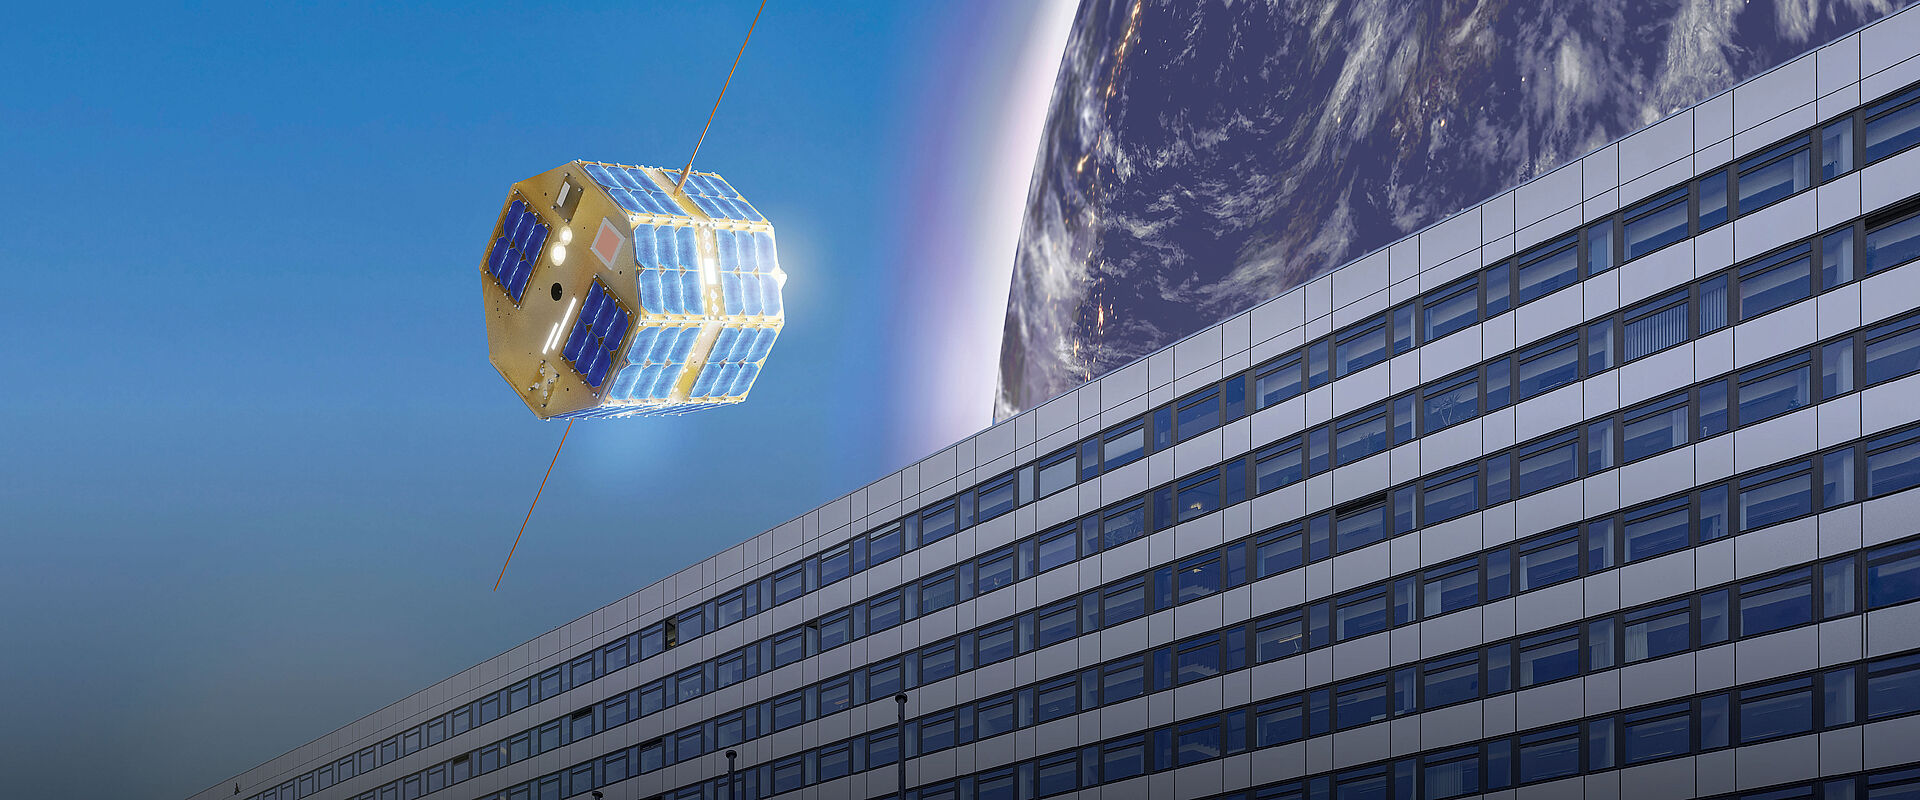 TU-Satellit über dem Hauptgebäude - Berlin University Alliance - Offenes Wissenslabor